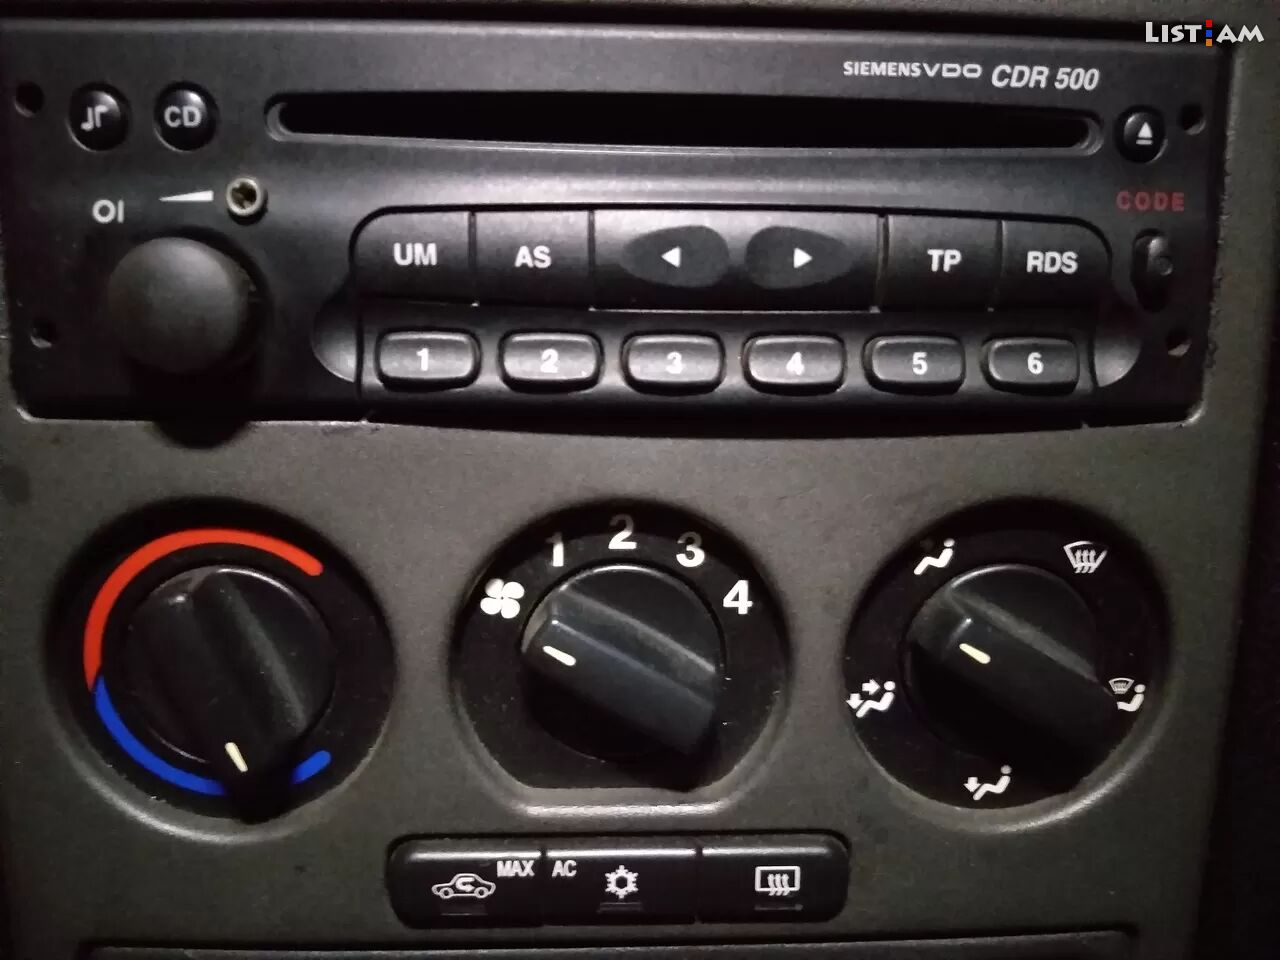 Opel մագ cd radio